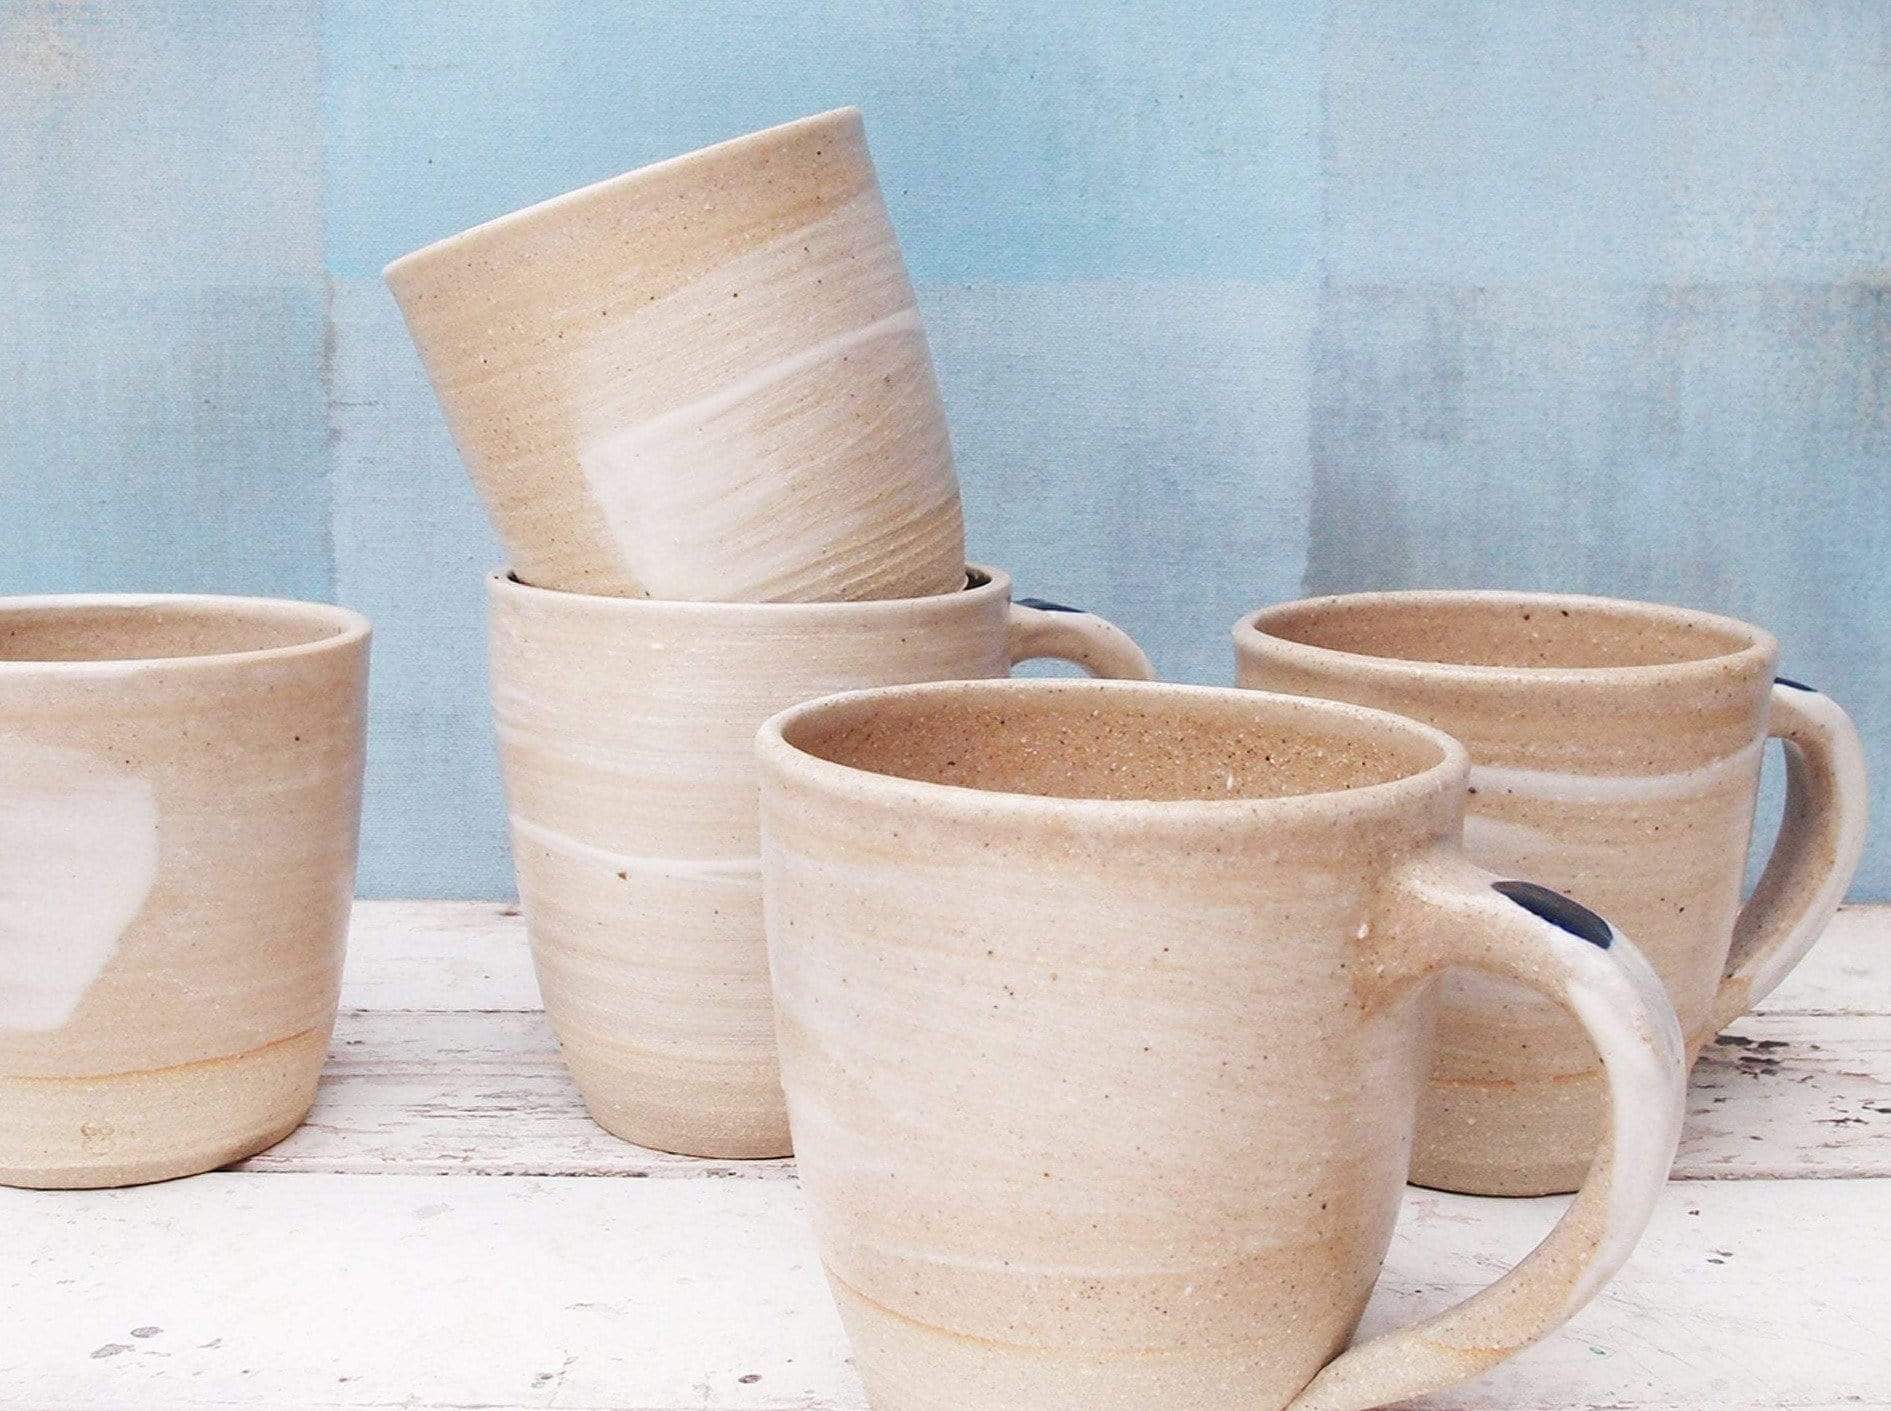 Handmade Ceramic Mugs With a Sandy White-Blue Design